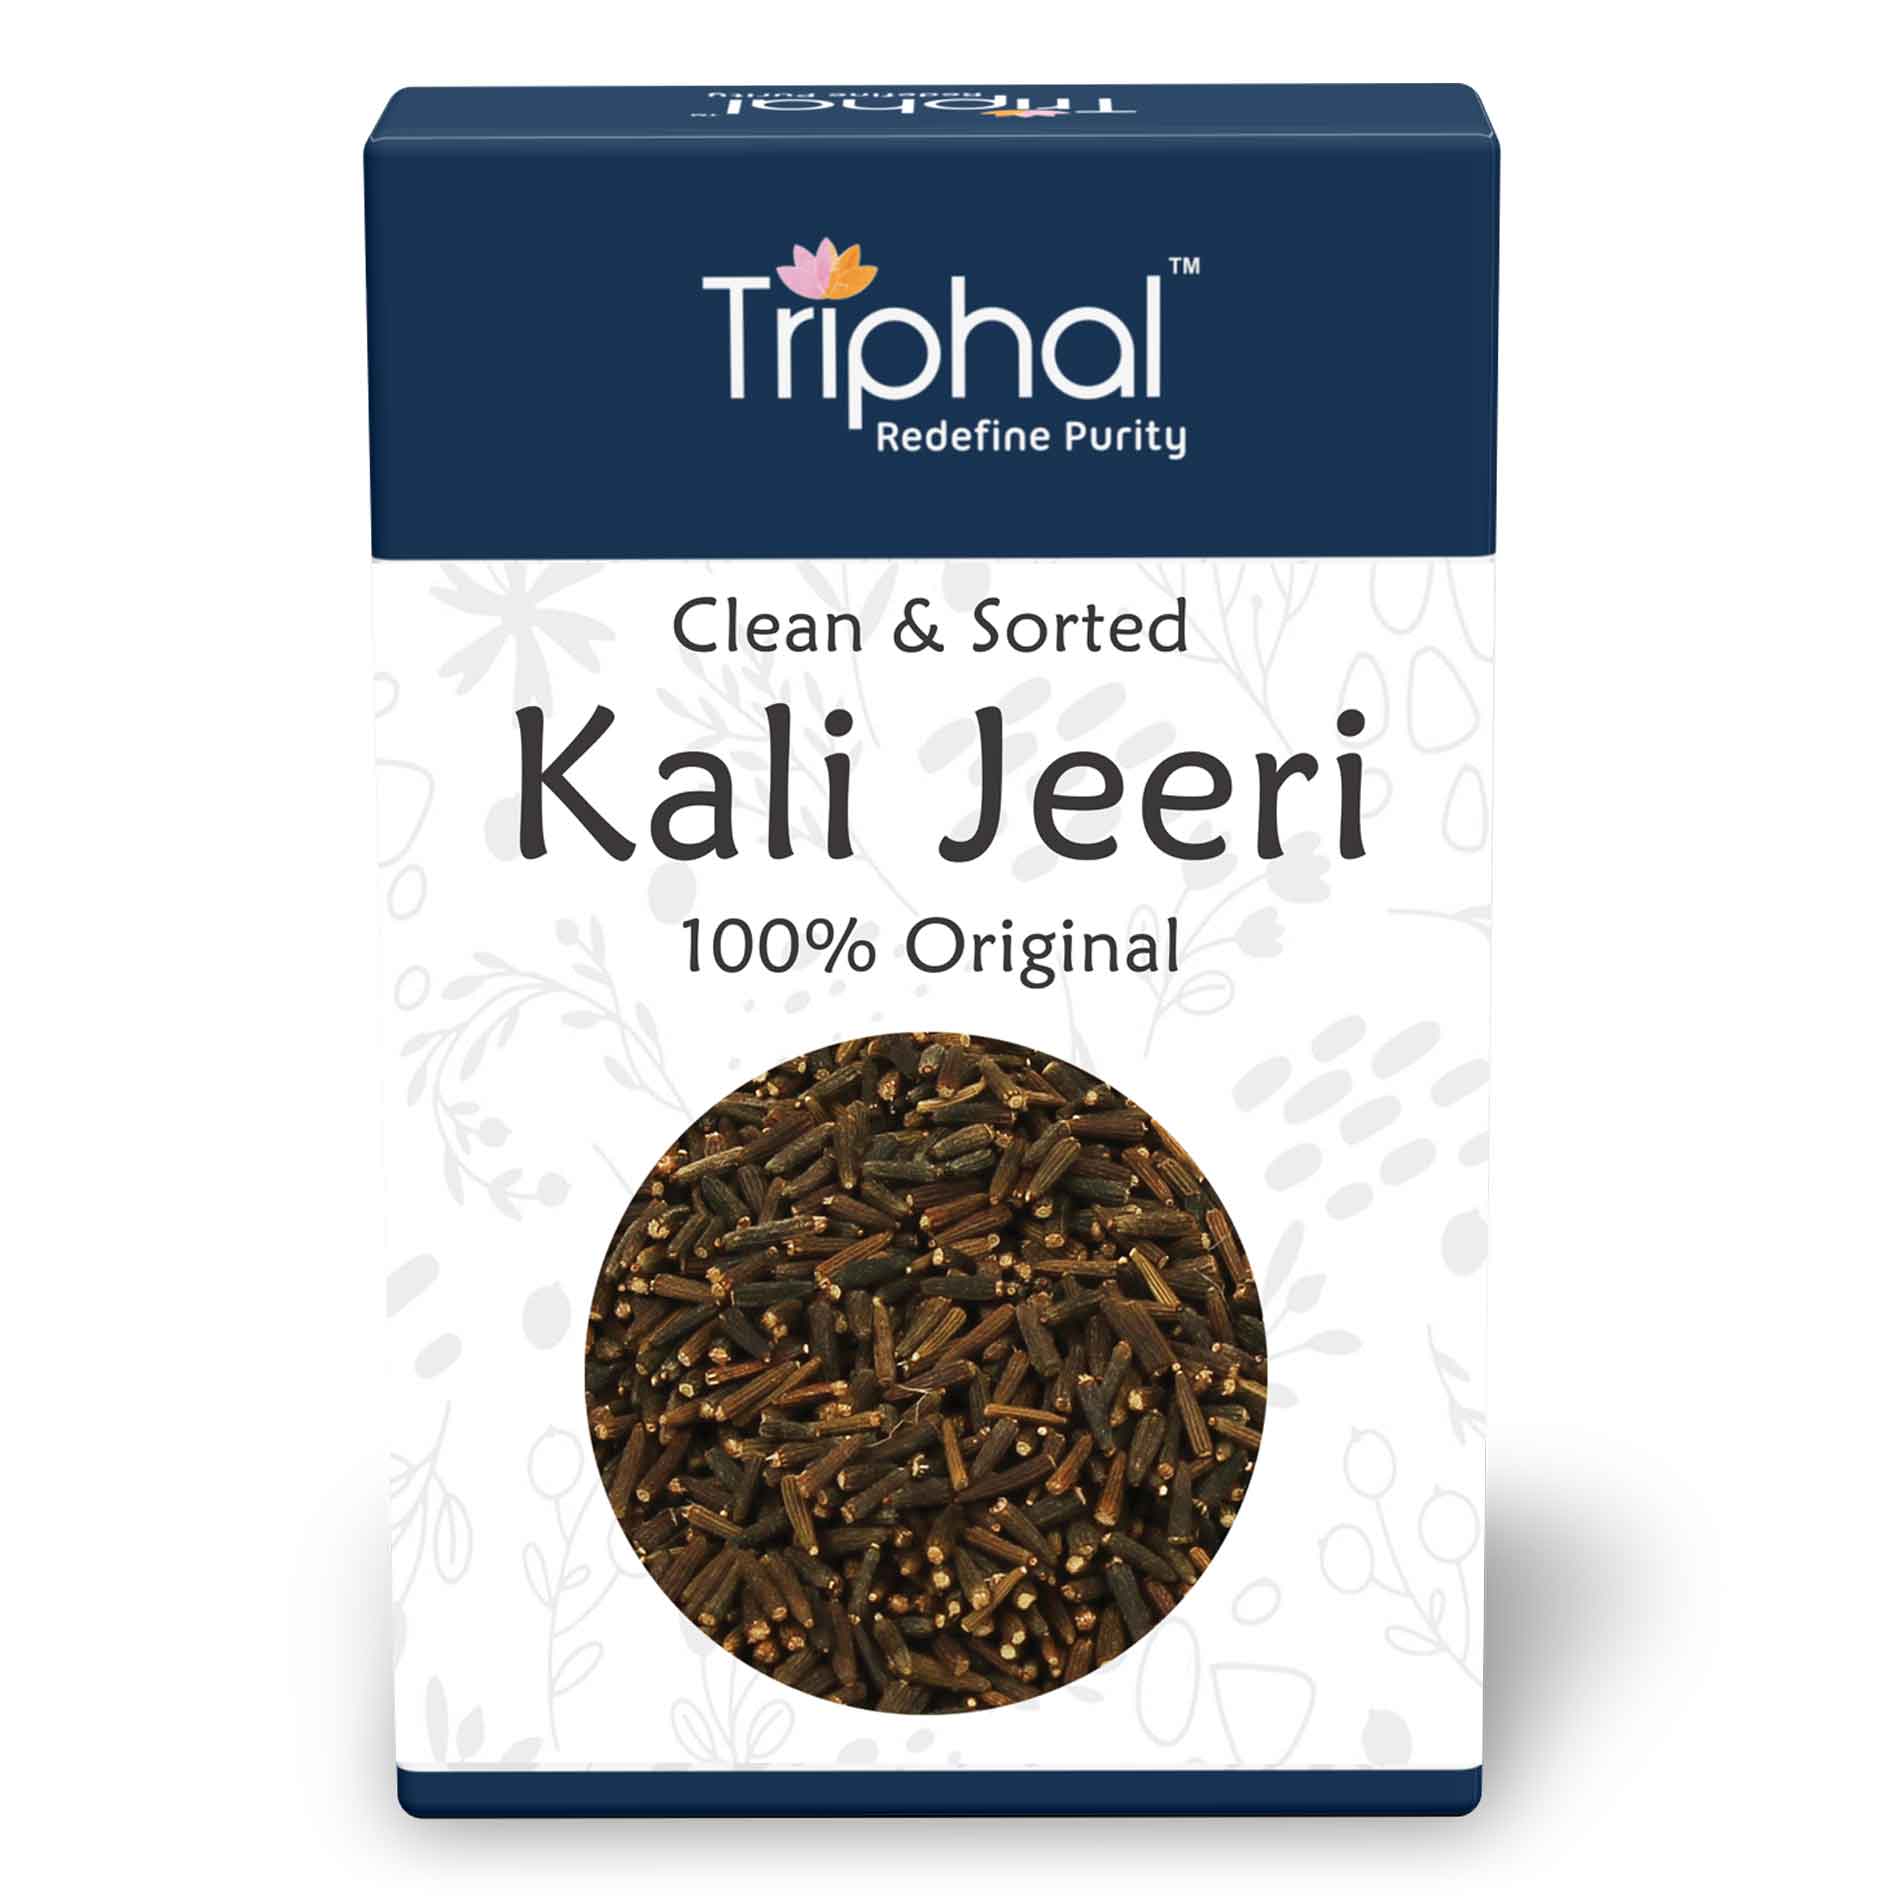 Kali Jeeri or Kali Jiri by Triphal